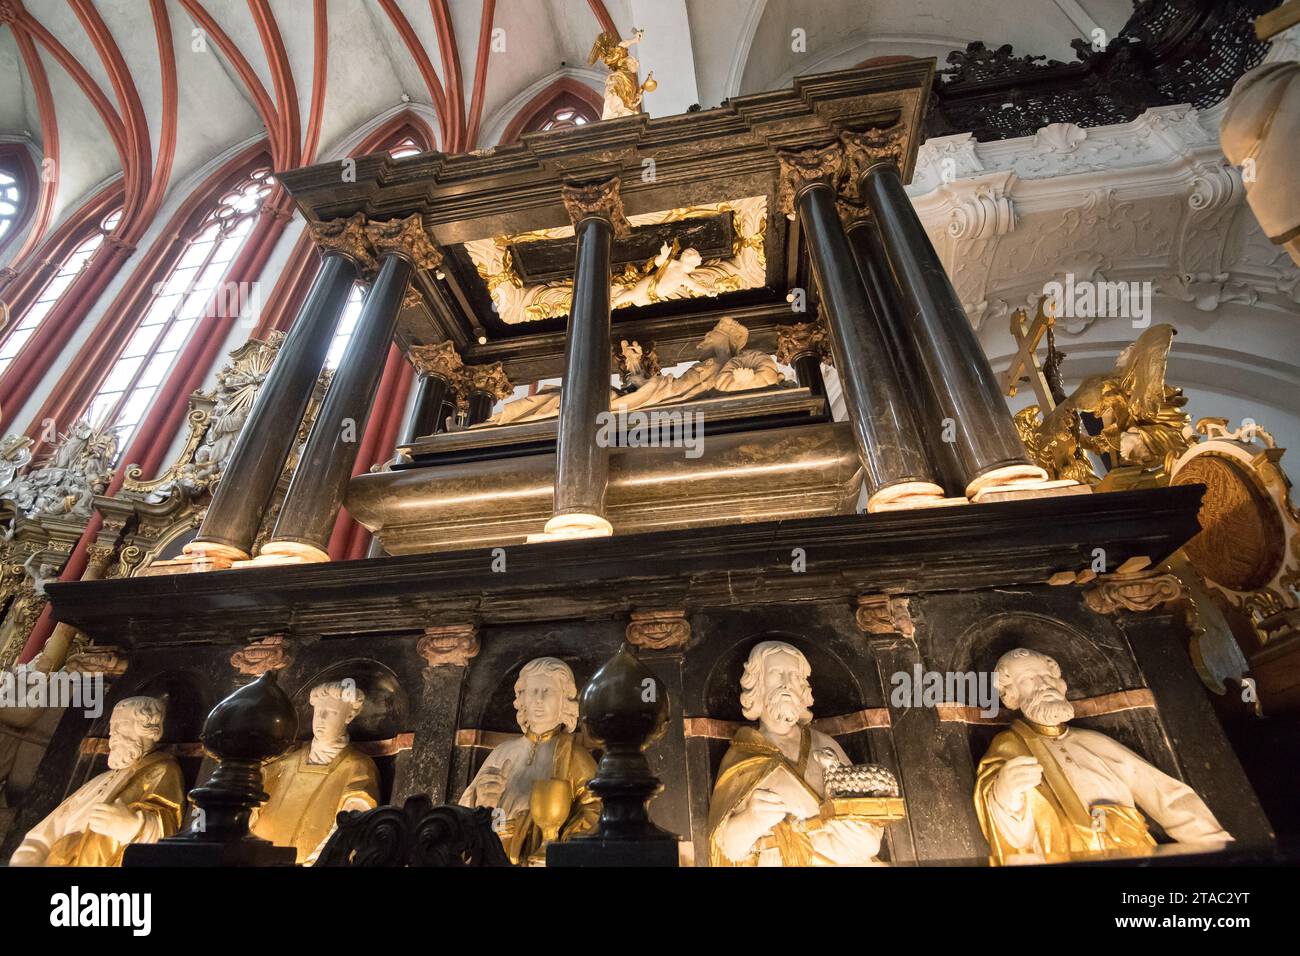 Tombe de St. Hedwige dans le sanctuaire de St Jadwiga à Trzebnica, Pologne © Wojciech Strozyk / Alamy stock photo Banque D'Images